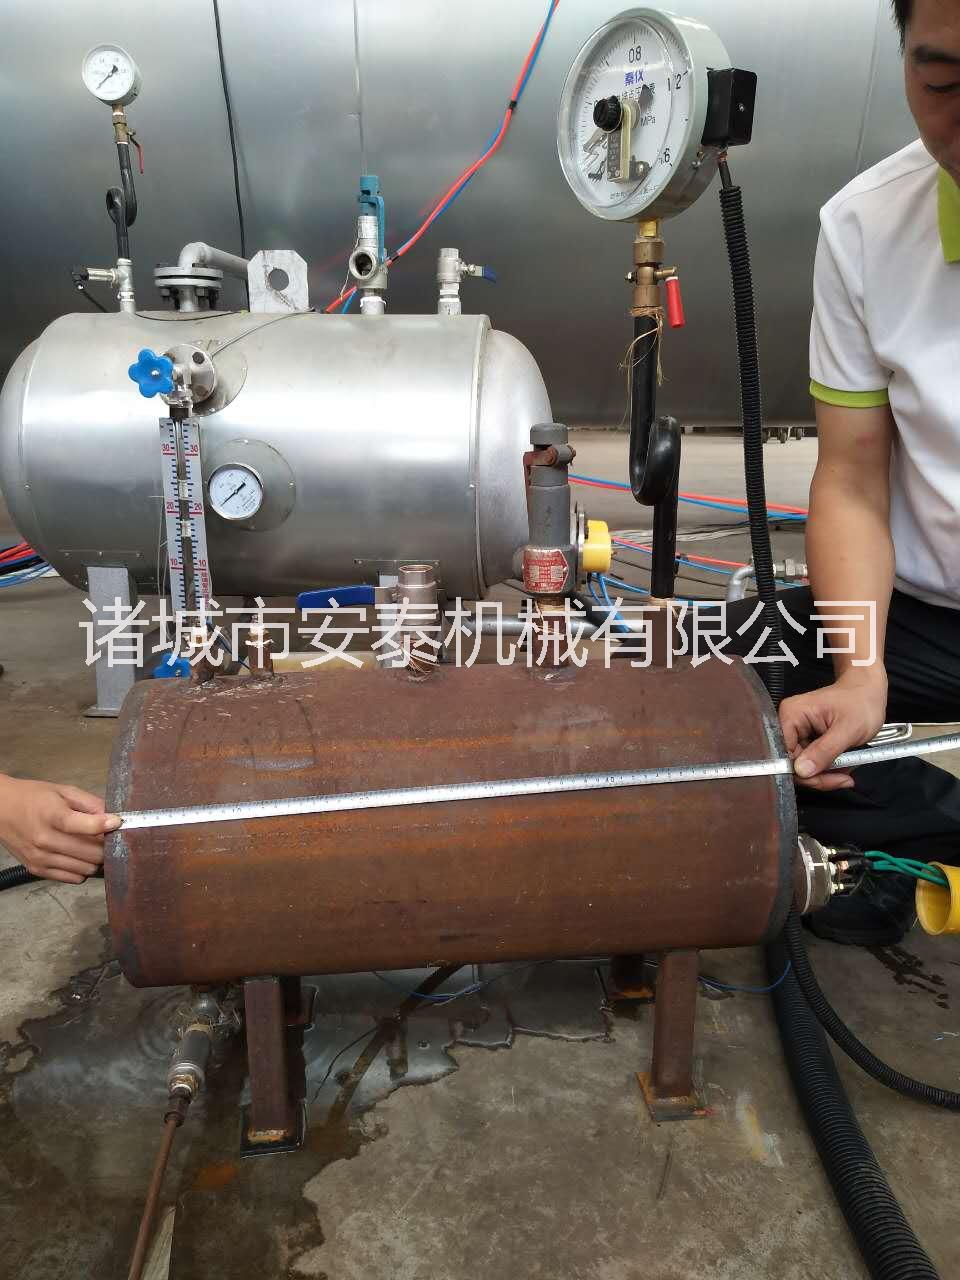 潍坊市工业用电蒸汽发生器厂家安泰高端品质工业用电蒸汽发生器热销中 安泰电蒸汽发生器同行业性价比高